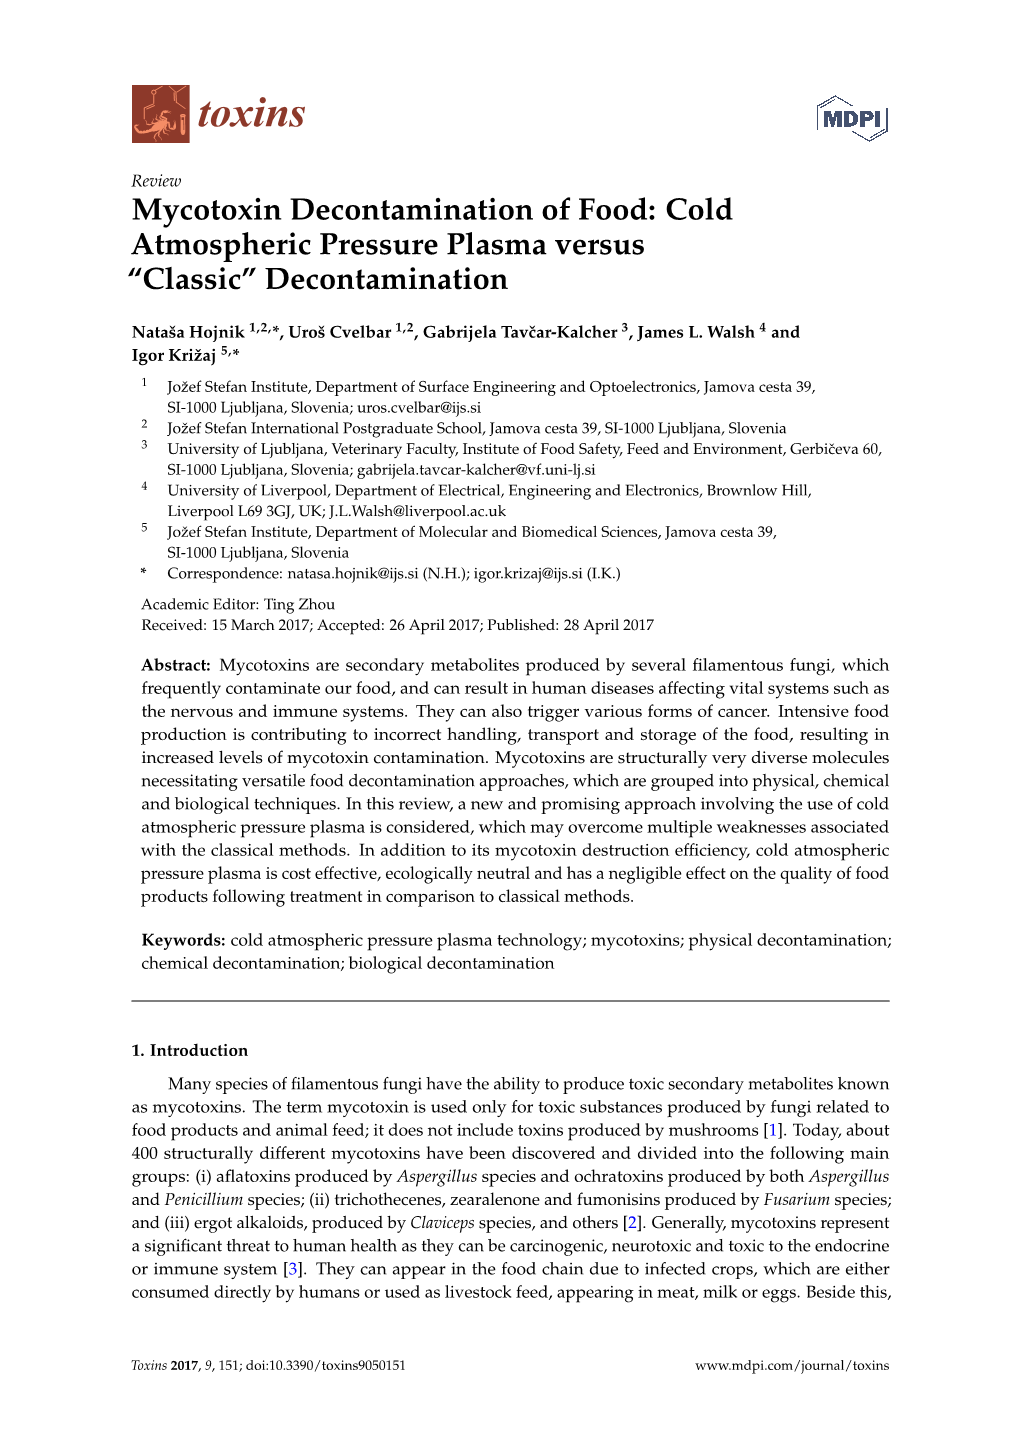 Mycotoxin Decontamination of Food: Cold Atmospheric Pressure Plasma Versus “Classic” Decontamination